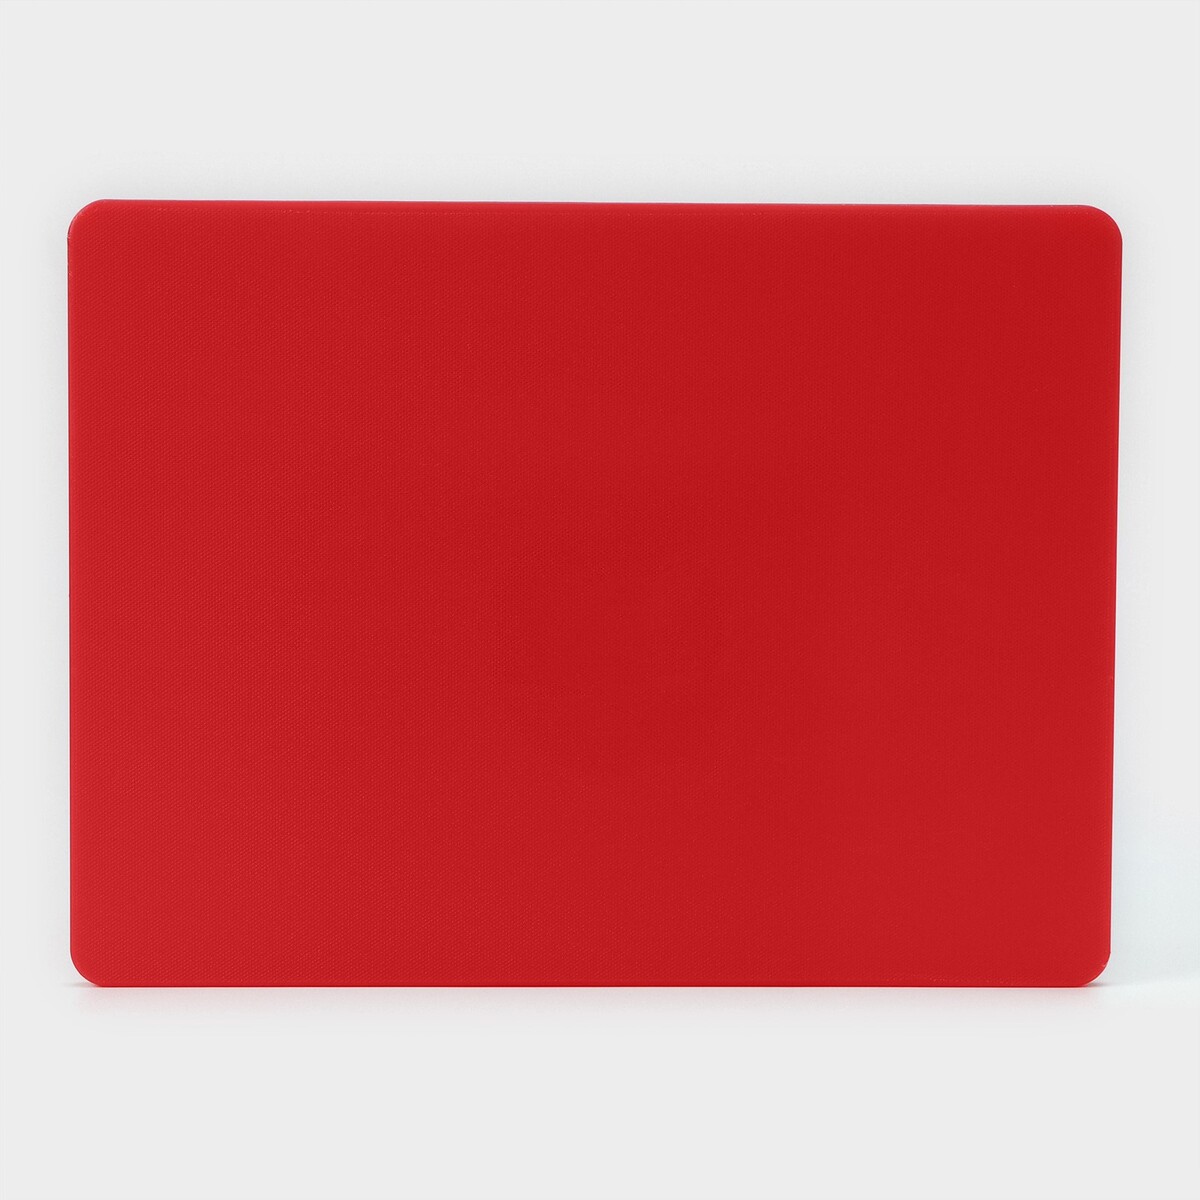 фото Доска профессиональная разделочная, 40×30 см, толщина 1,2 см, цвет красный no brand